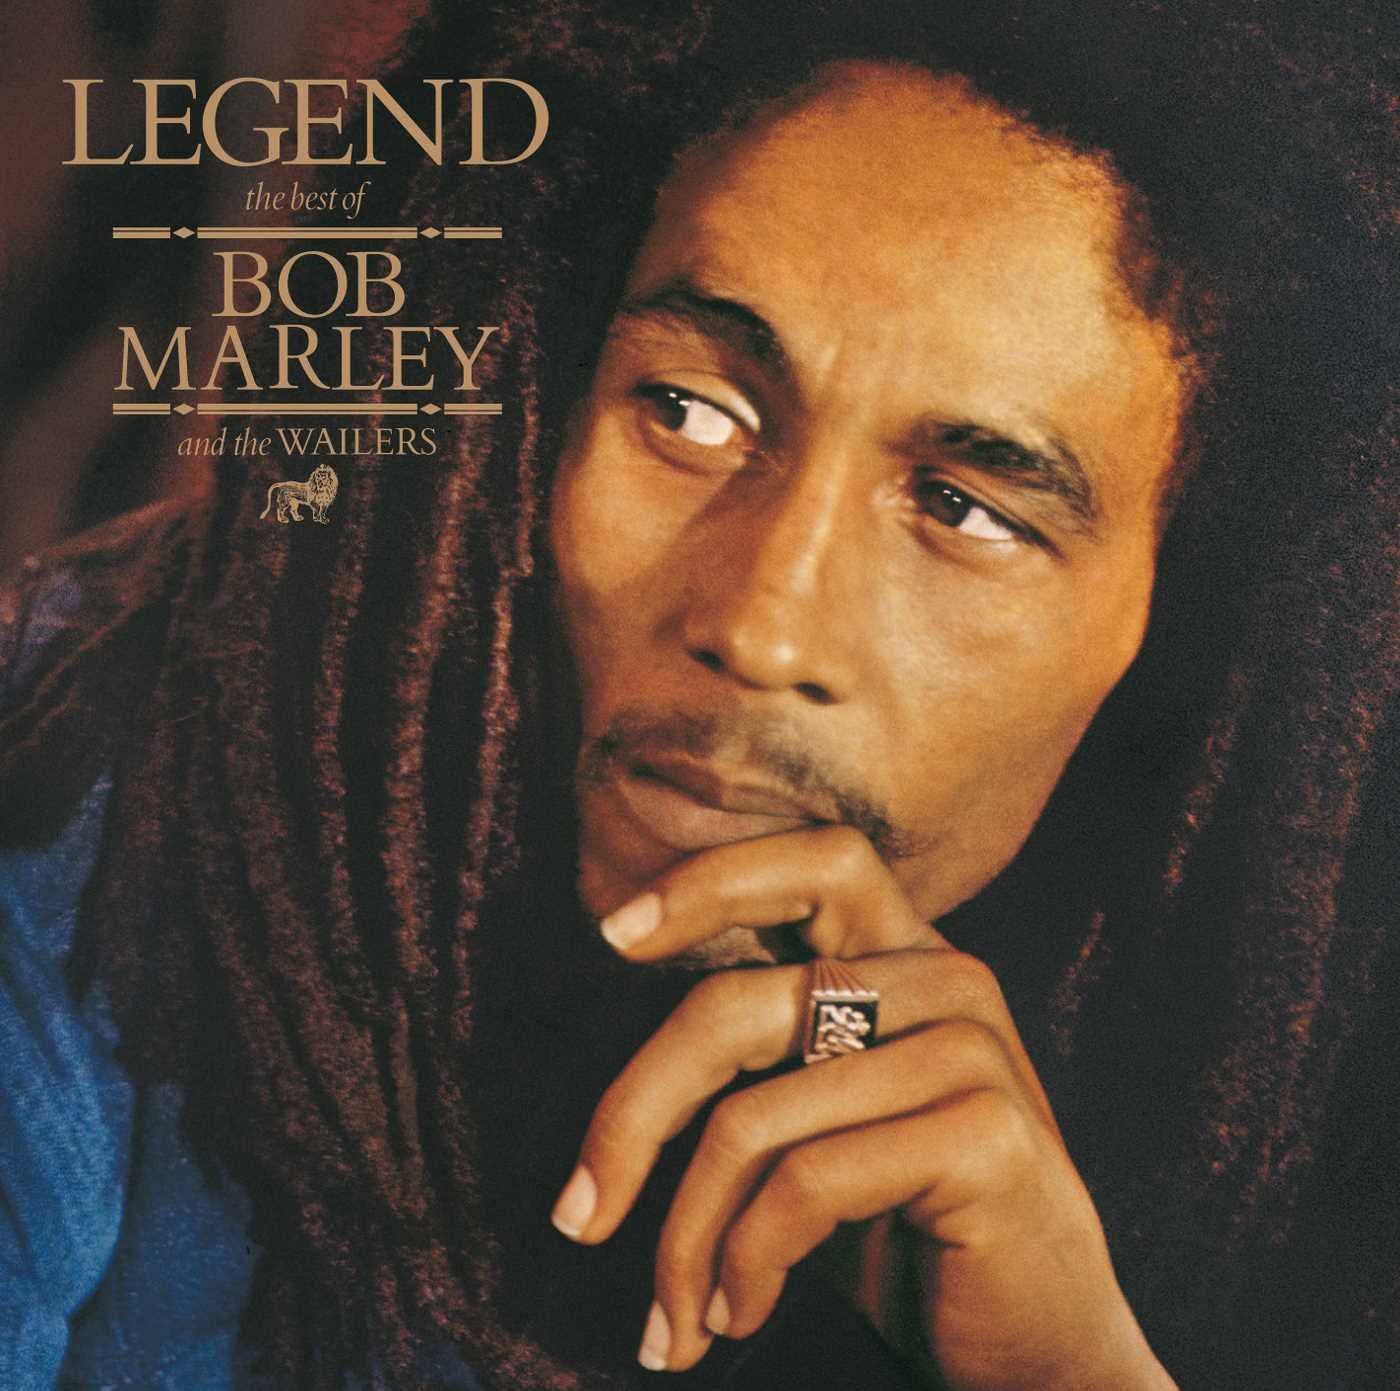 Por eso, cada 6 de febrero se rinde homenaje a Bob Marley, quizá el máximo exponente del reggae, de todos los tiempos. La fecha coincide con el natalicio de este famoso cantante.